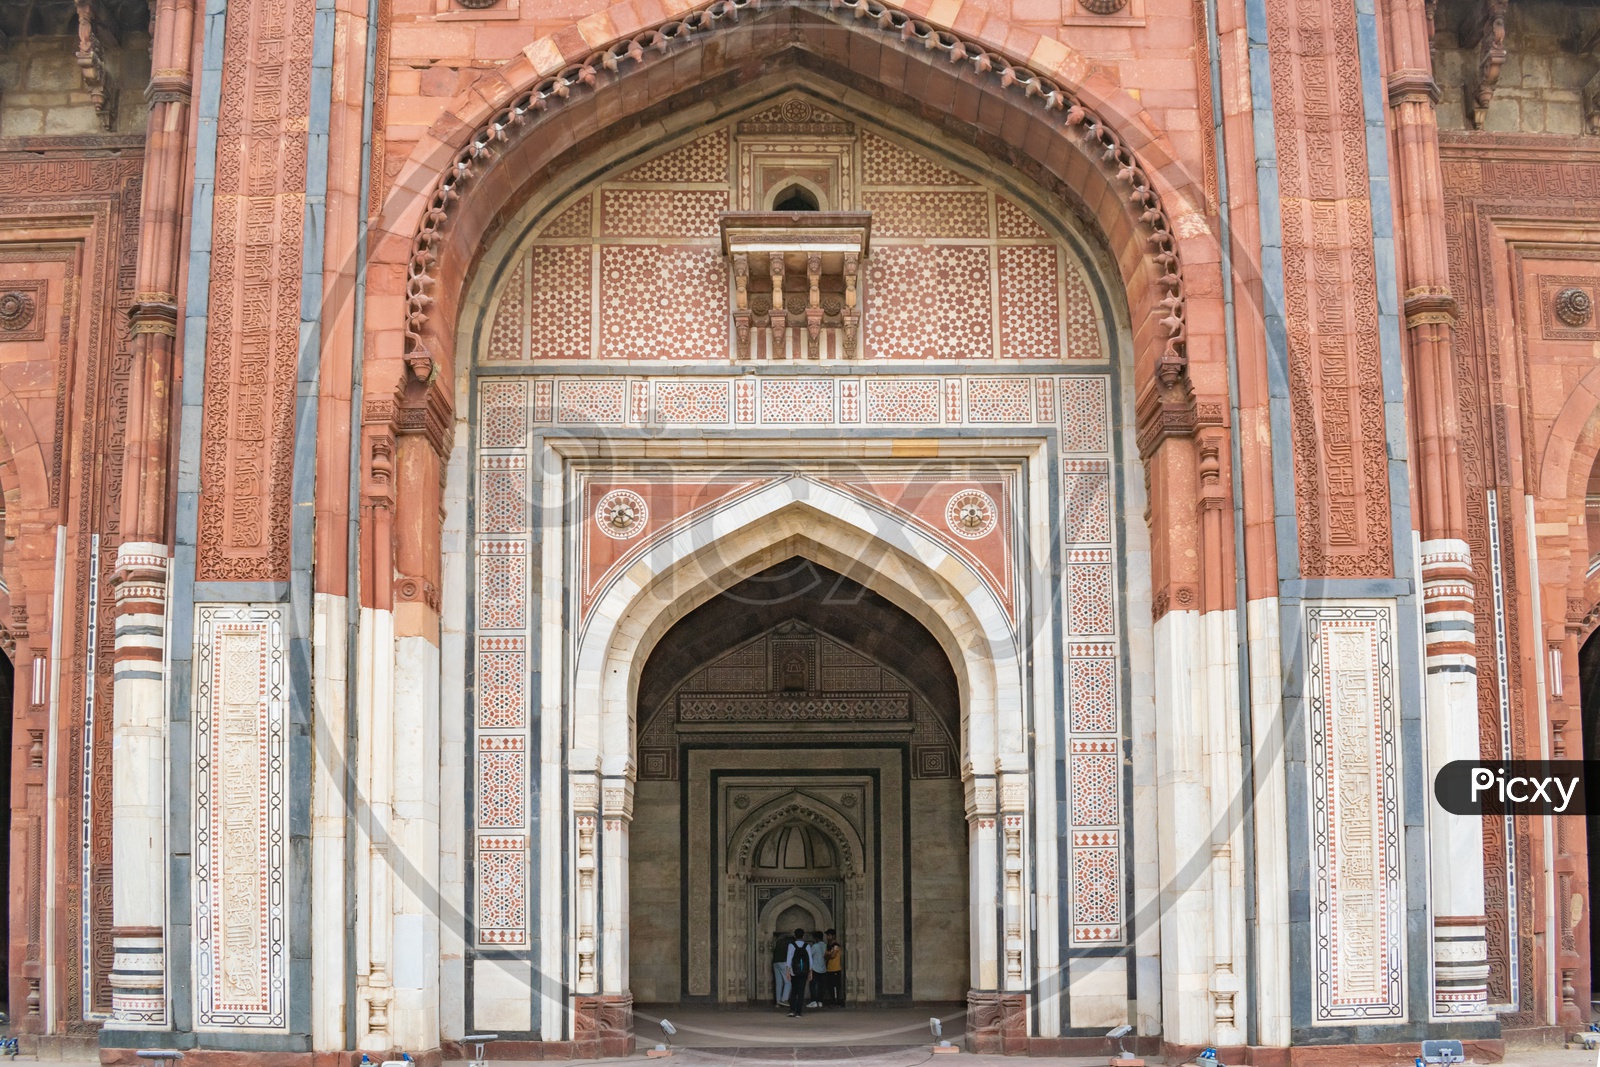 Grand Mosque(Qila-E-Kuhna Masjid), Purana Qila, Delhi